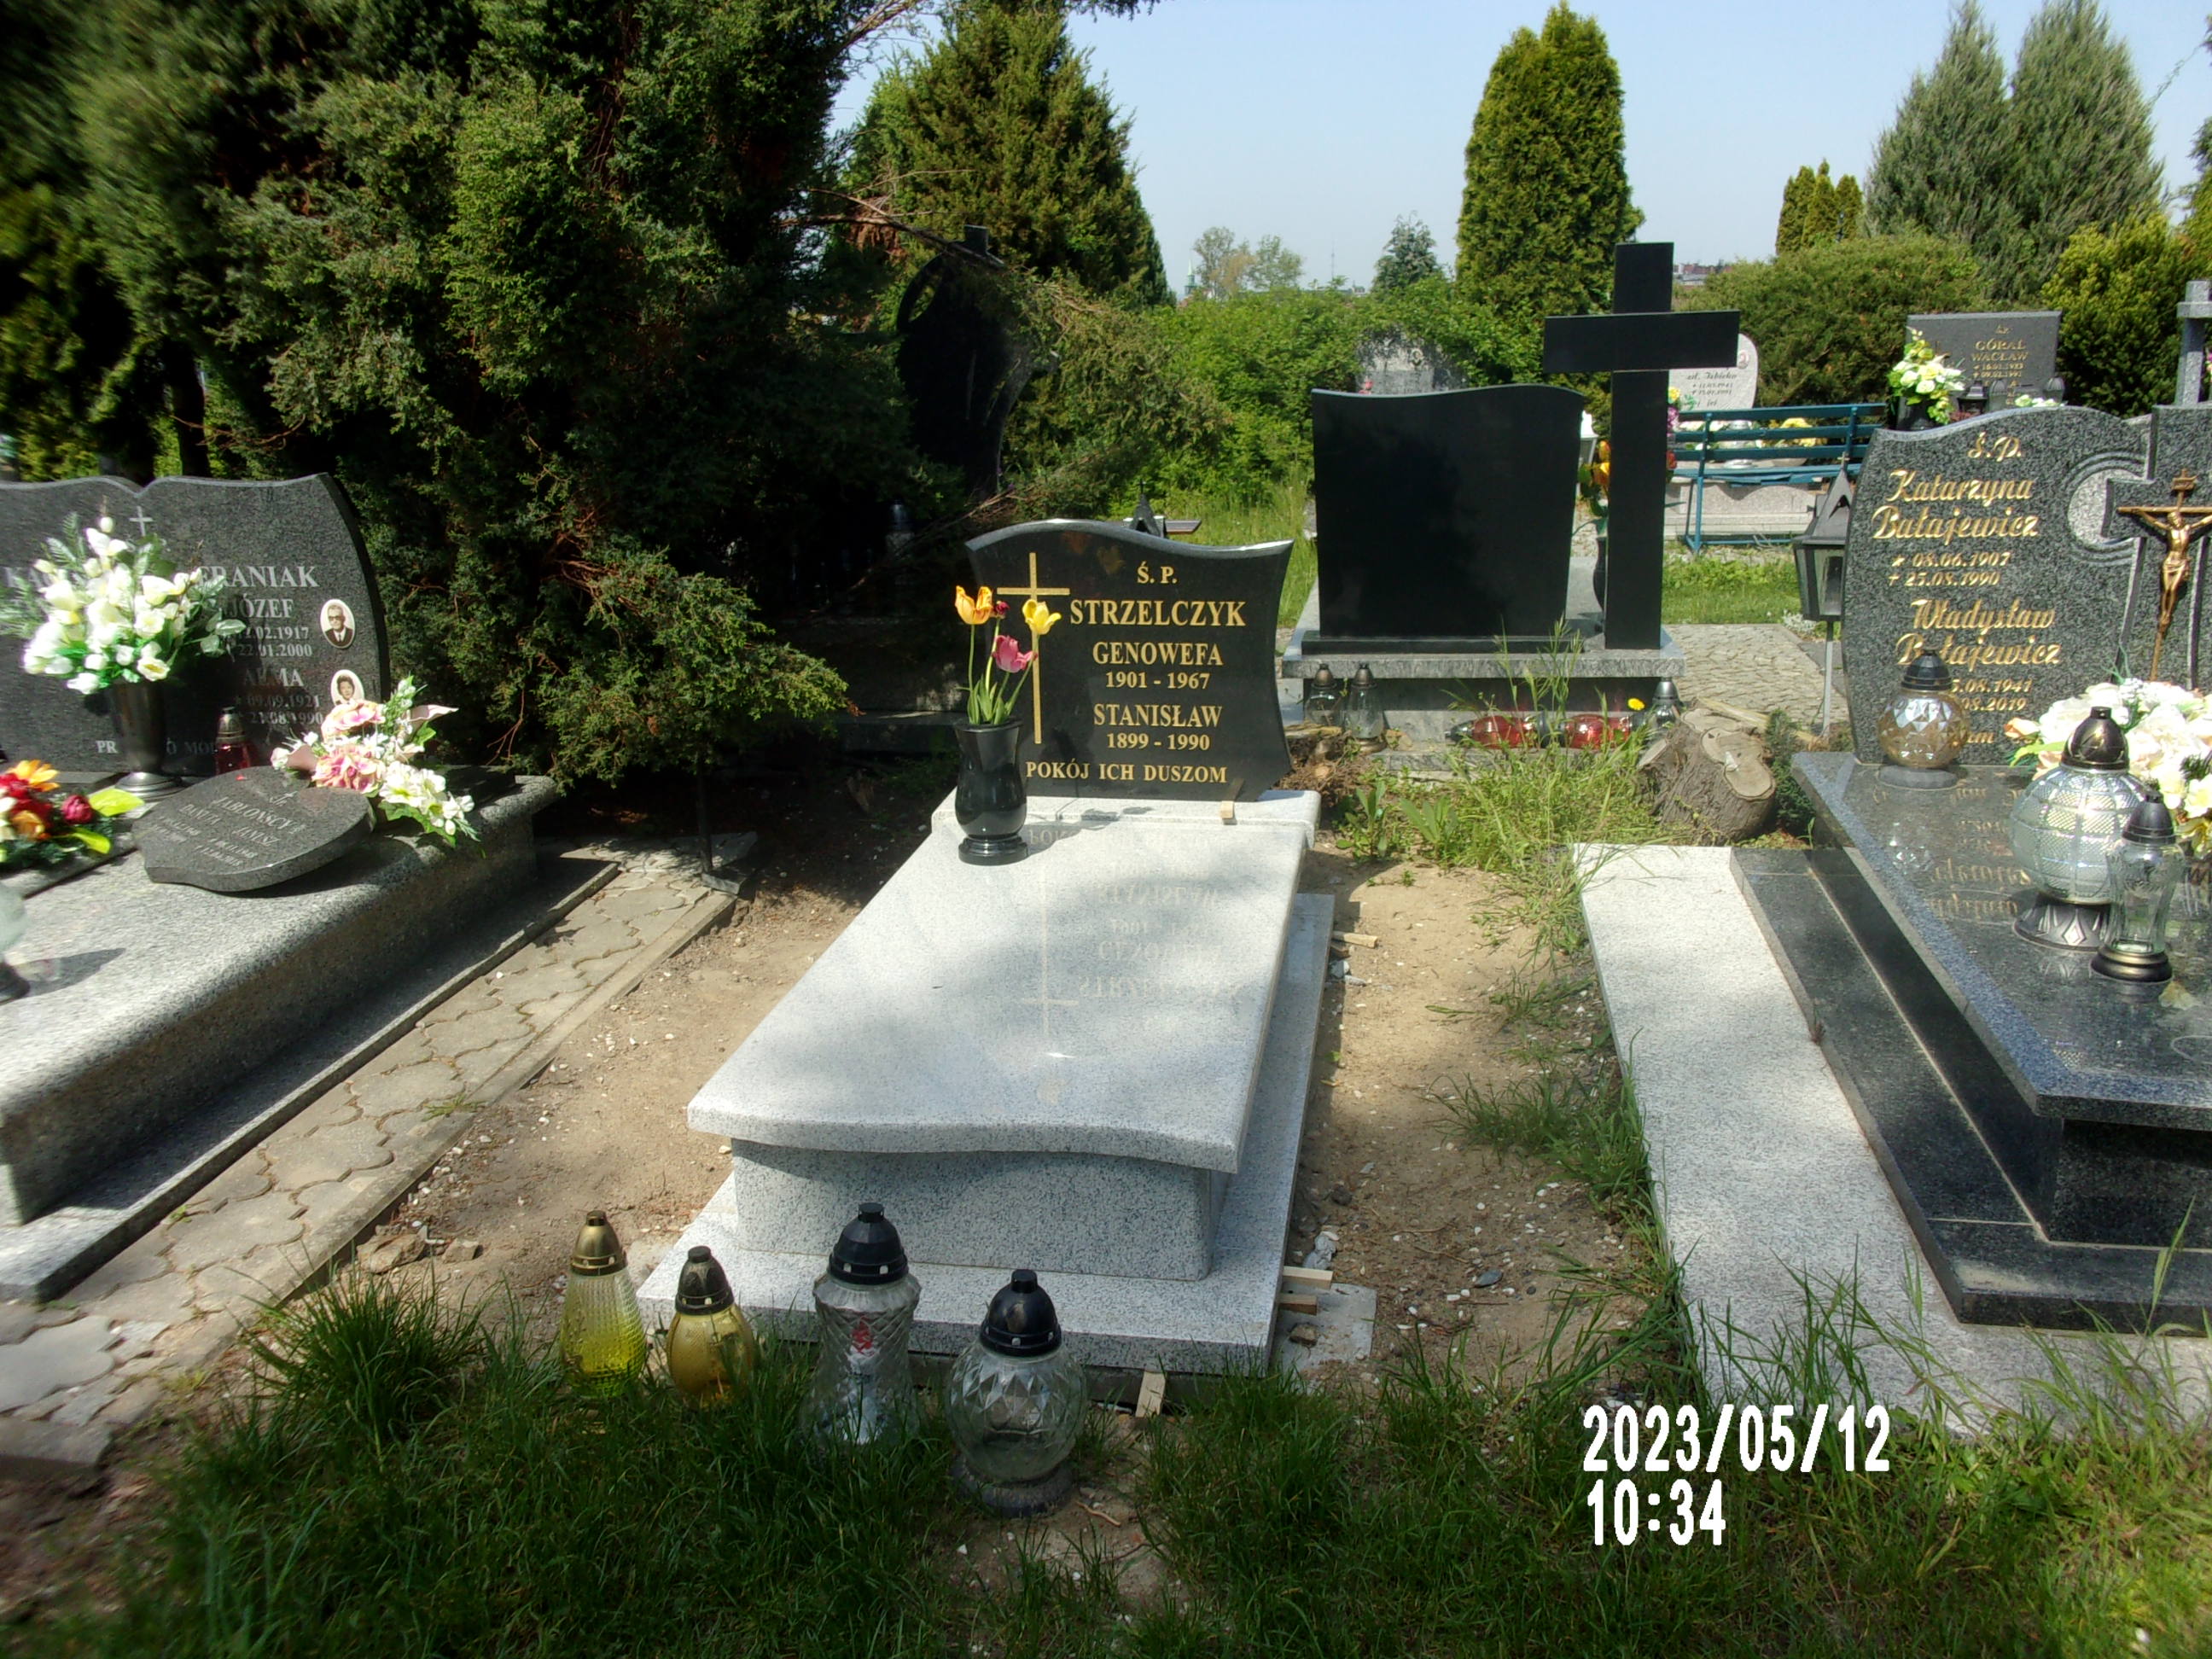 Zdjęcie grobu Genowefa Strzelczyk